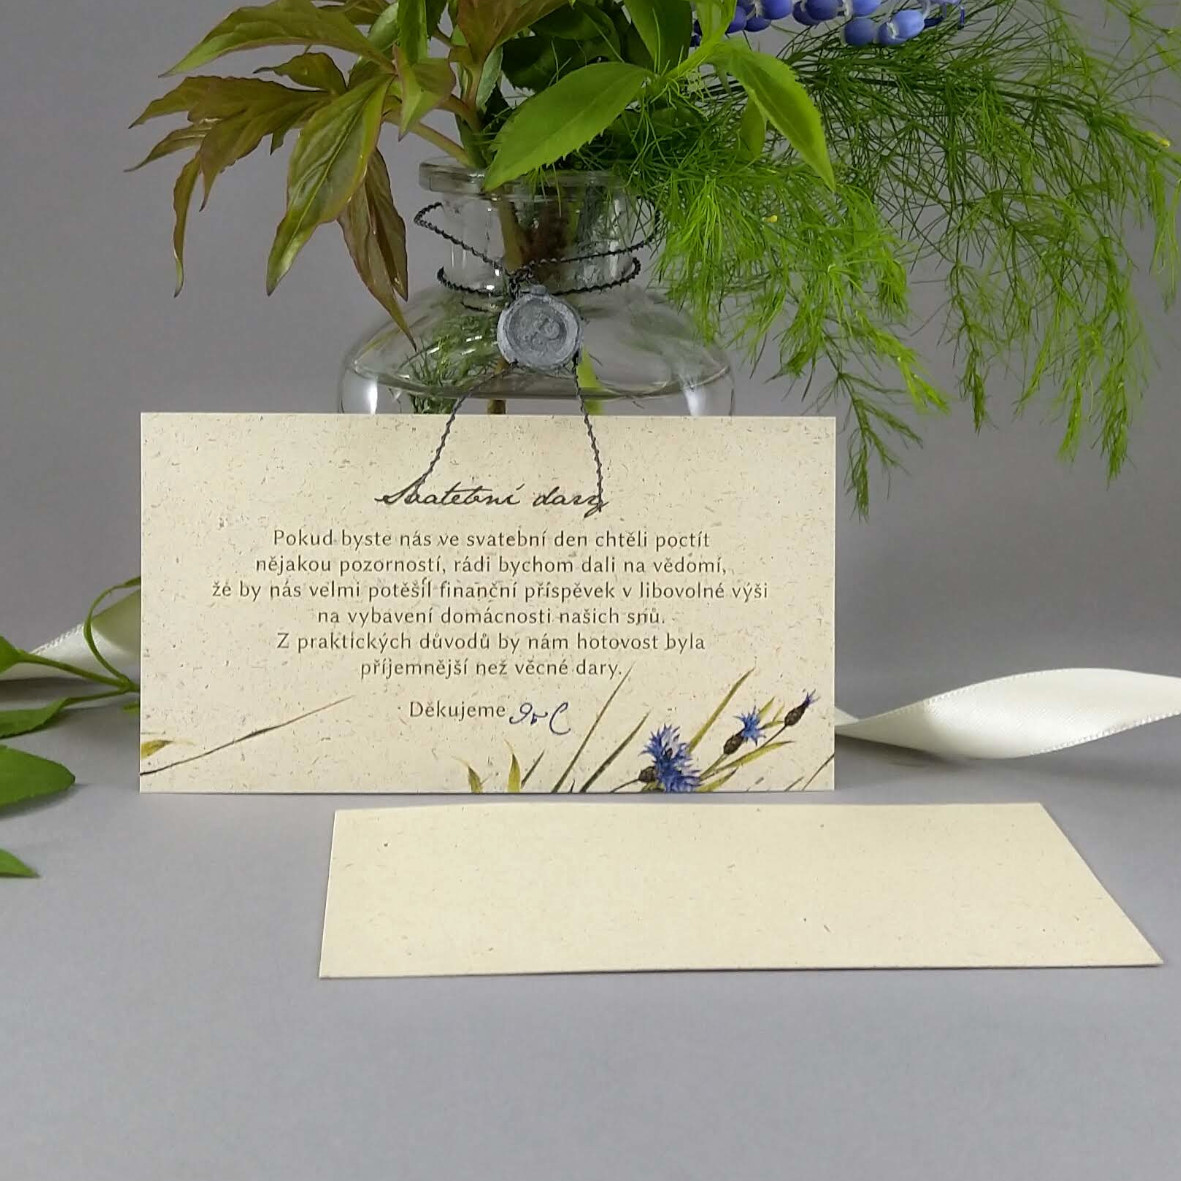 Pozvánka, informační karta – z papíru s příměsí suché trávy s lučním motivem, formát 120 × 65 mm, jednostranná